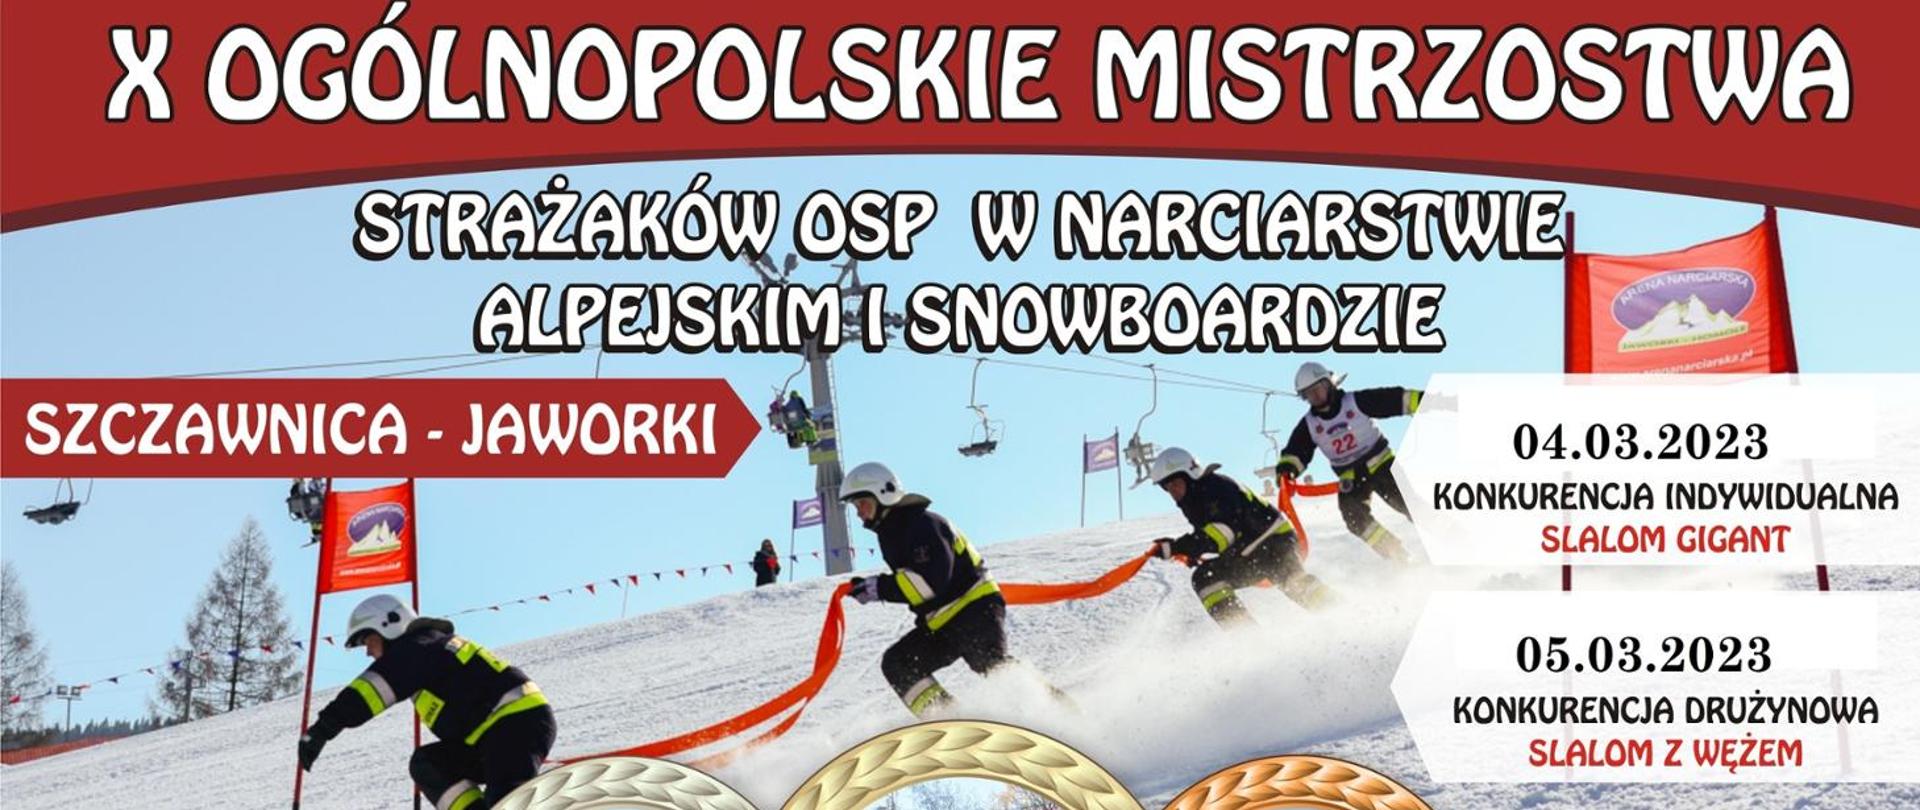 X ogólnopolskie mistrzostwa strażaków OSP